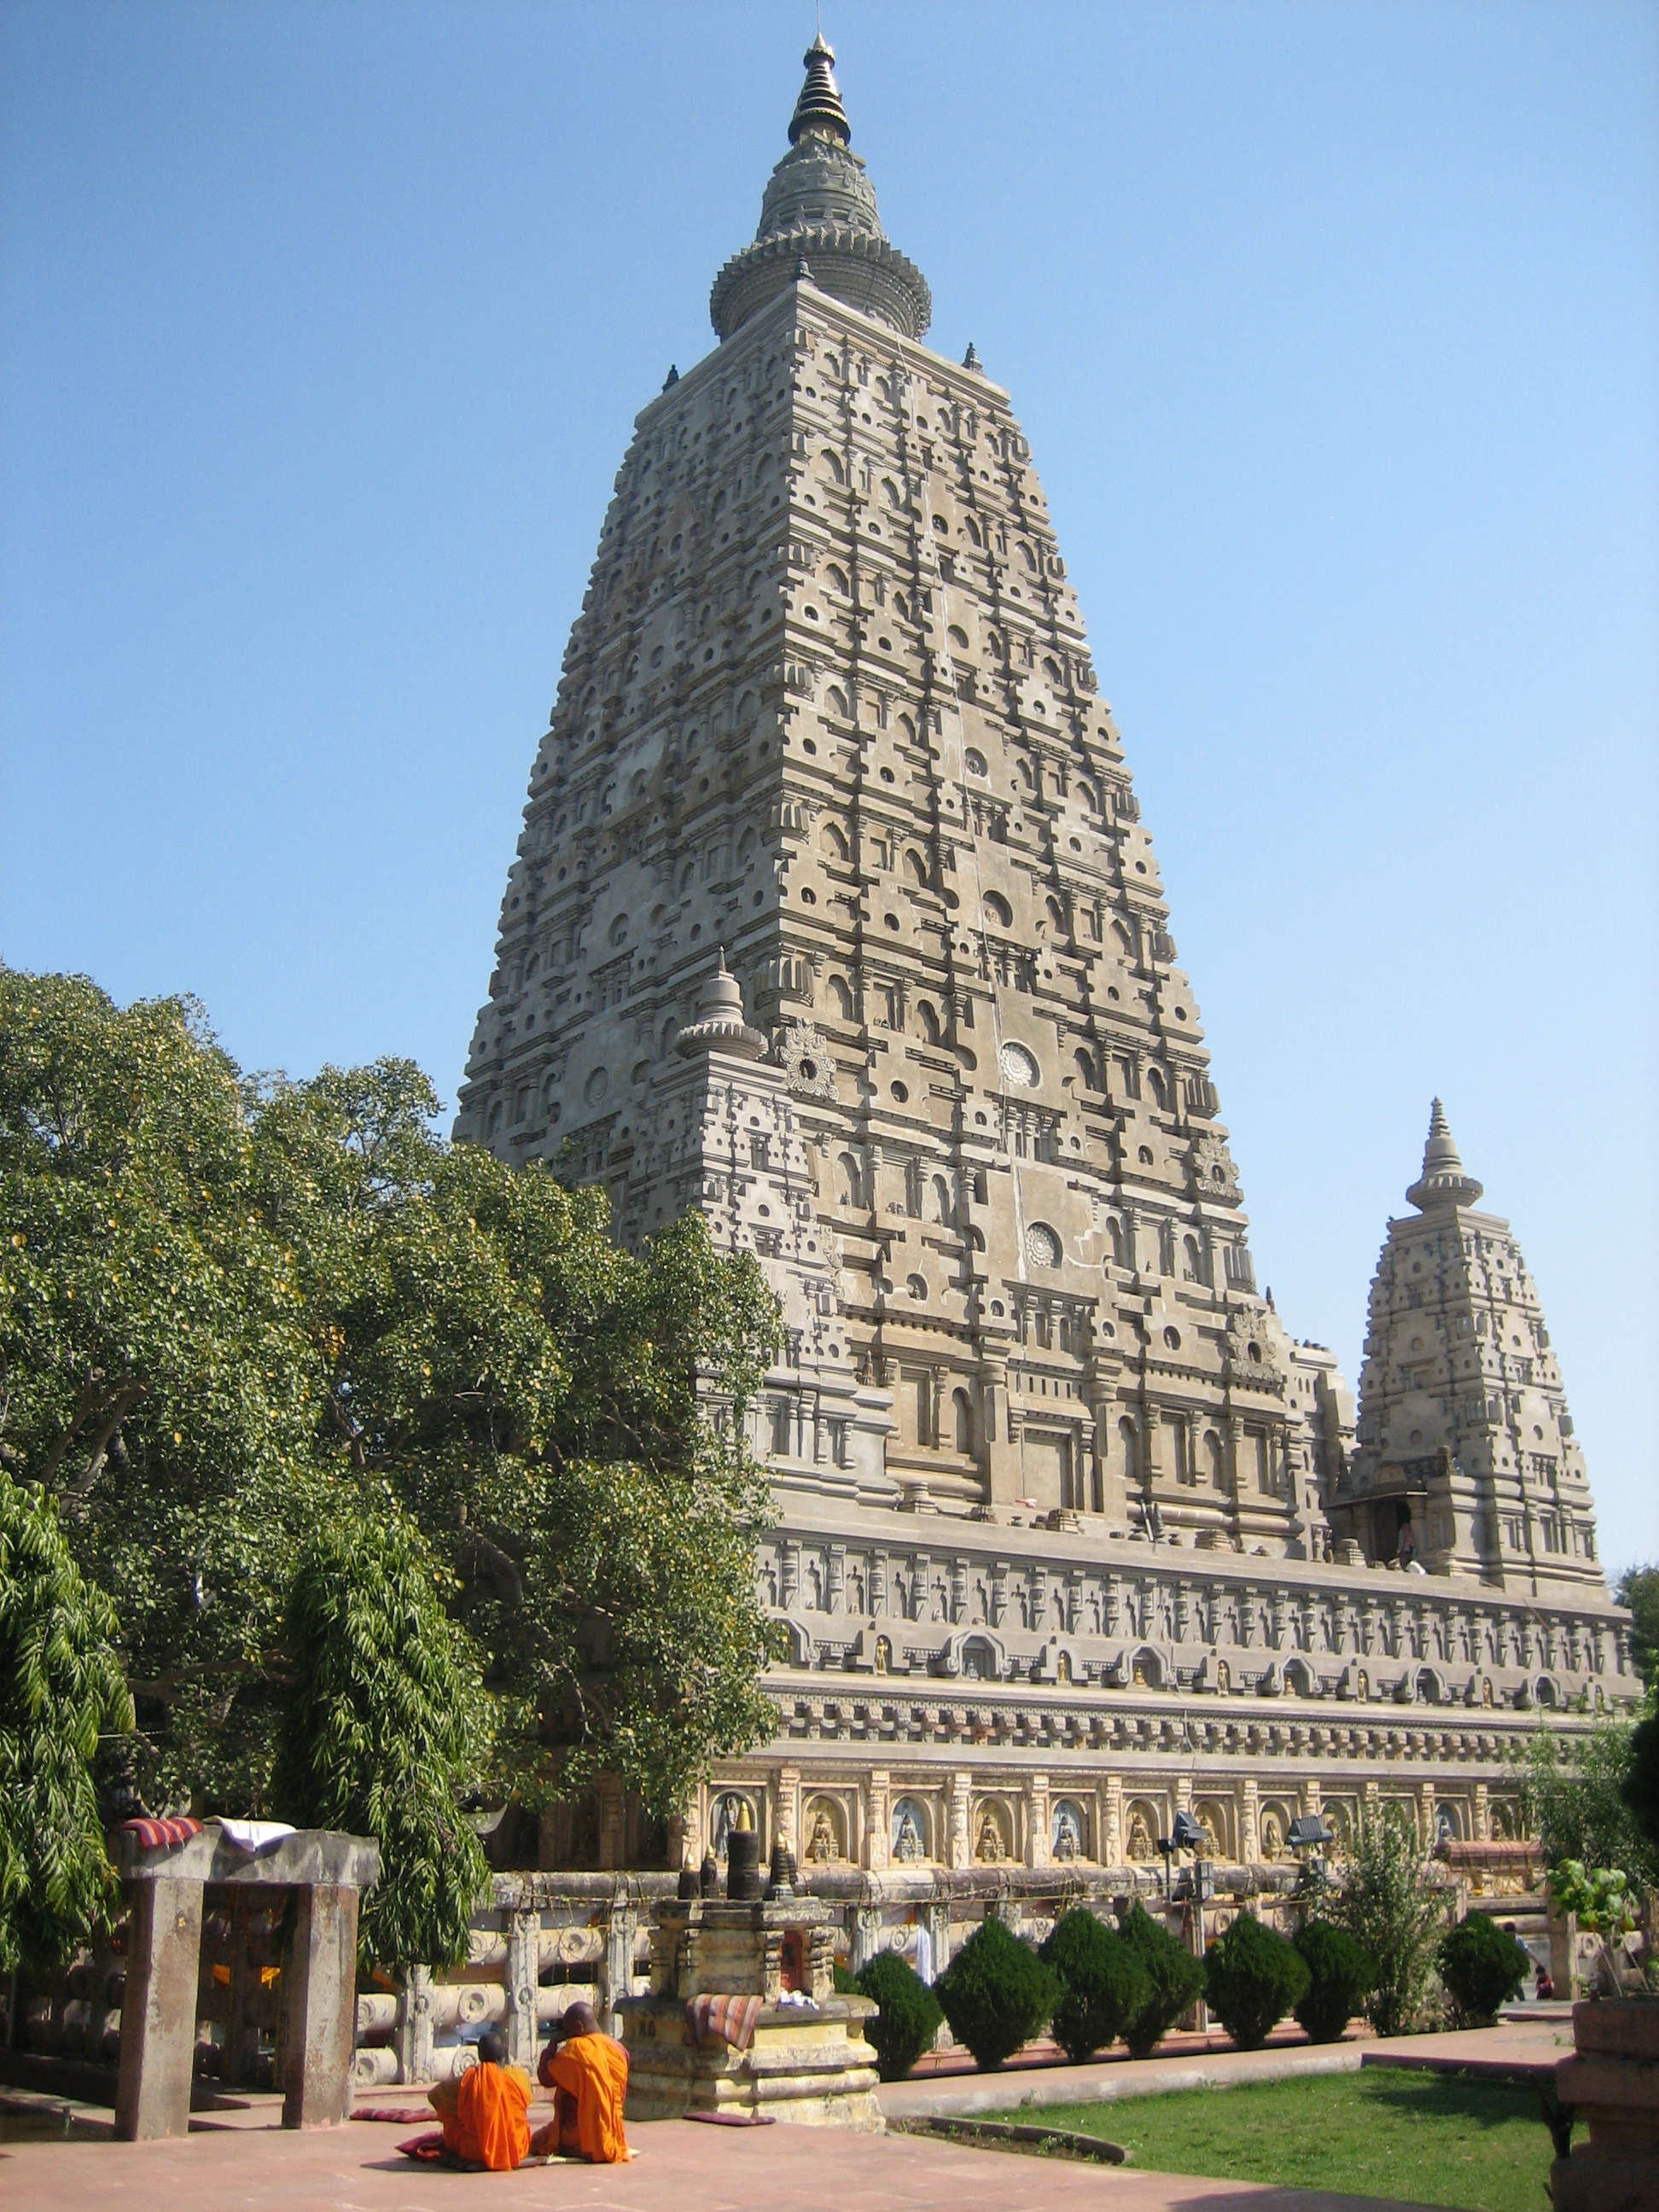 Indienurlaub: Einer der spektakulärsten Tempel Indiens